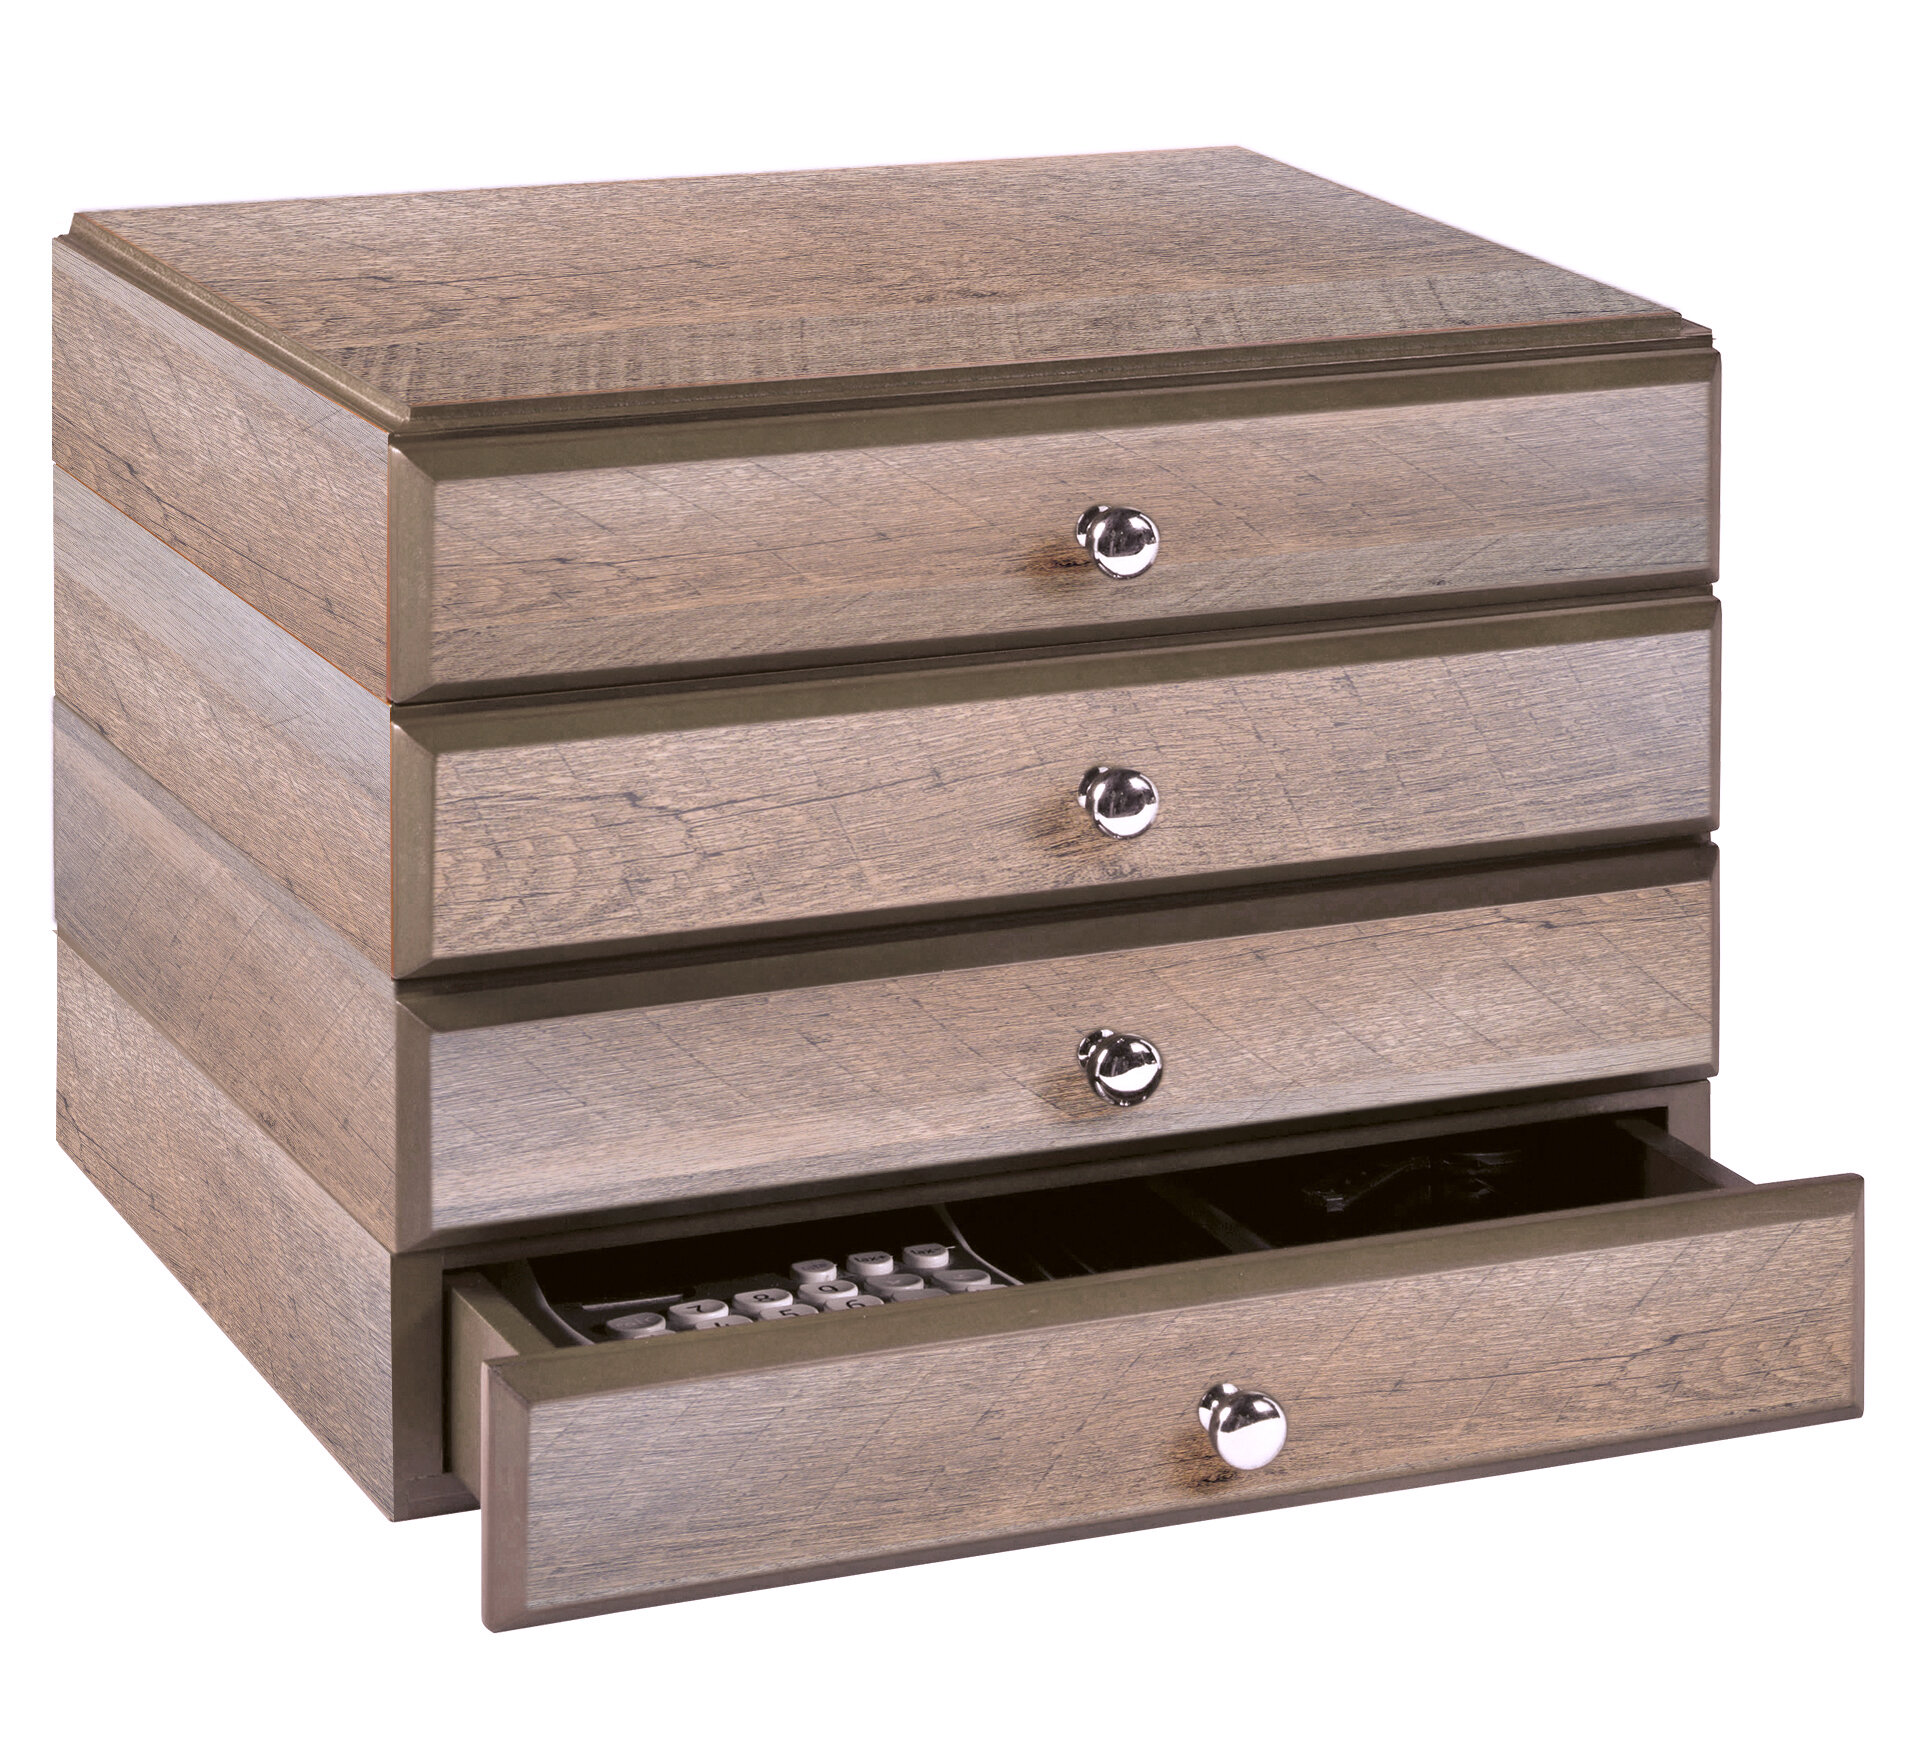 Wooden Desktop Organizer With Drawers Atcsagacity Com